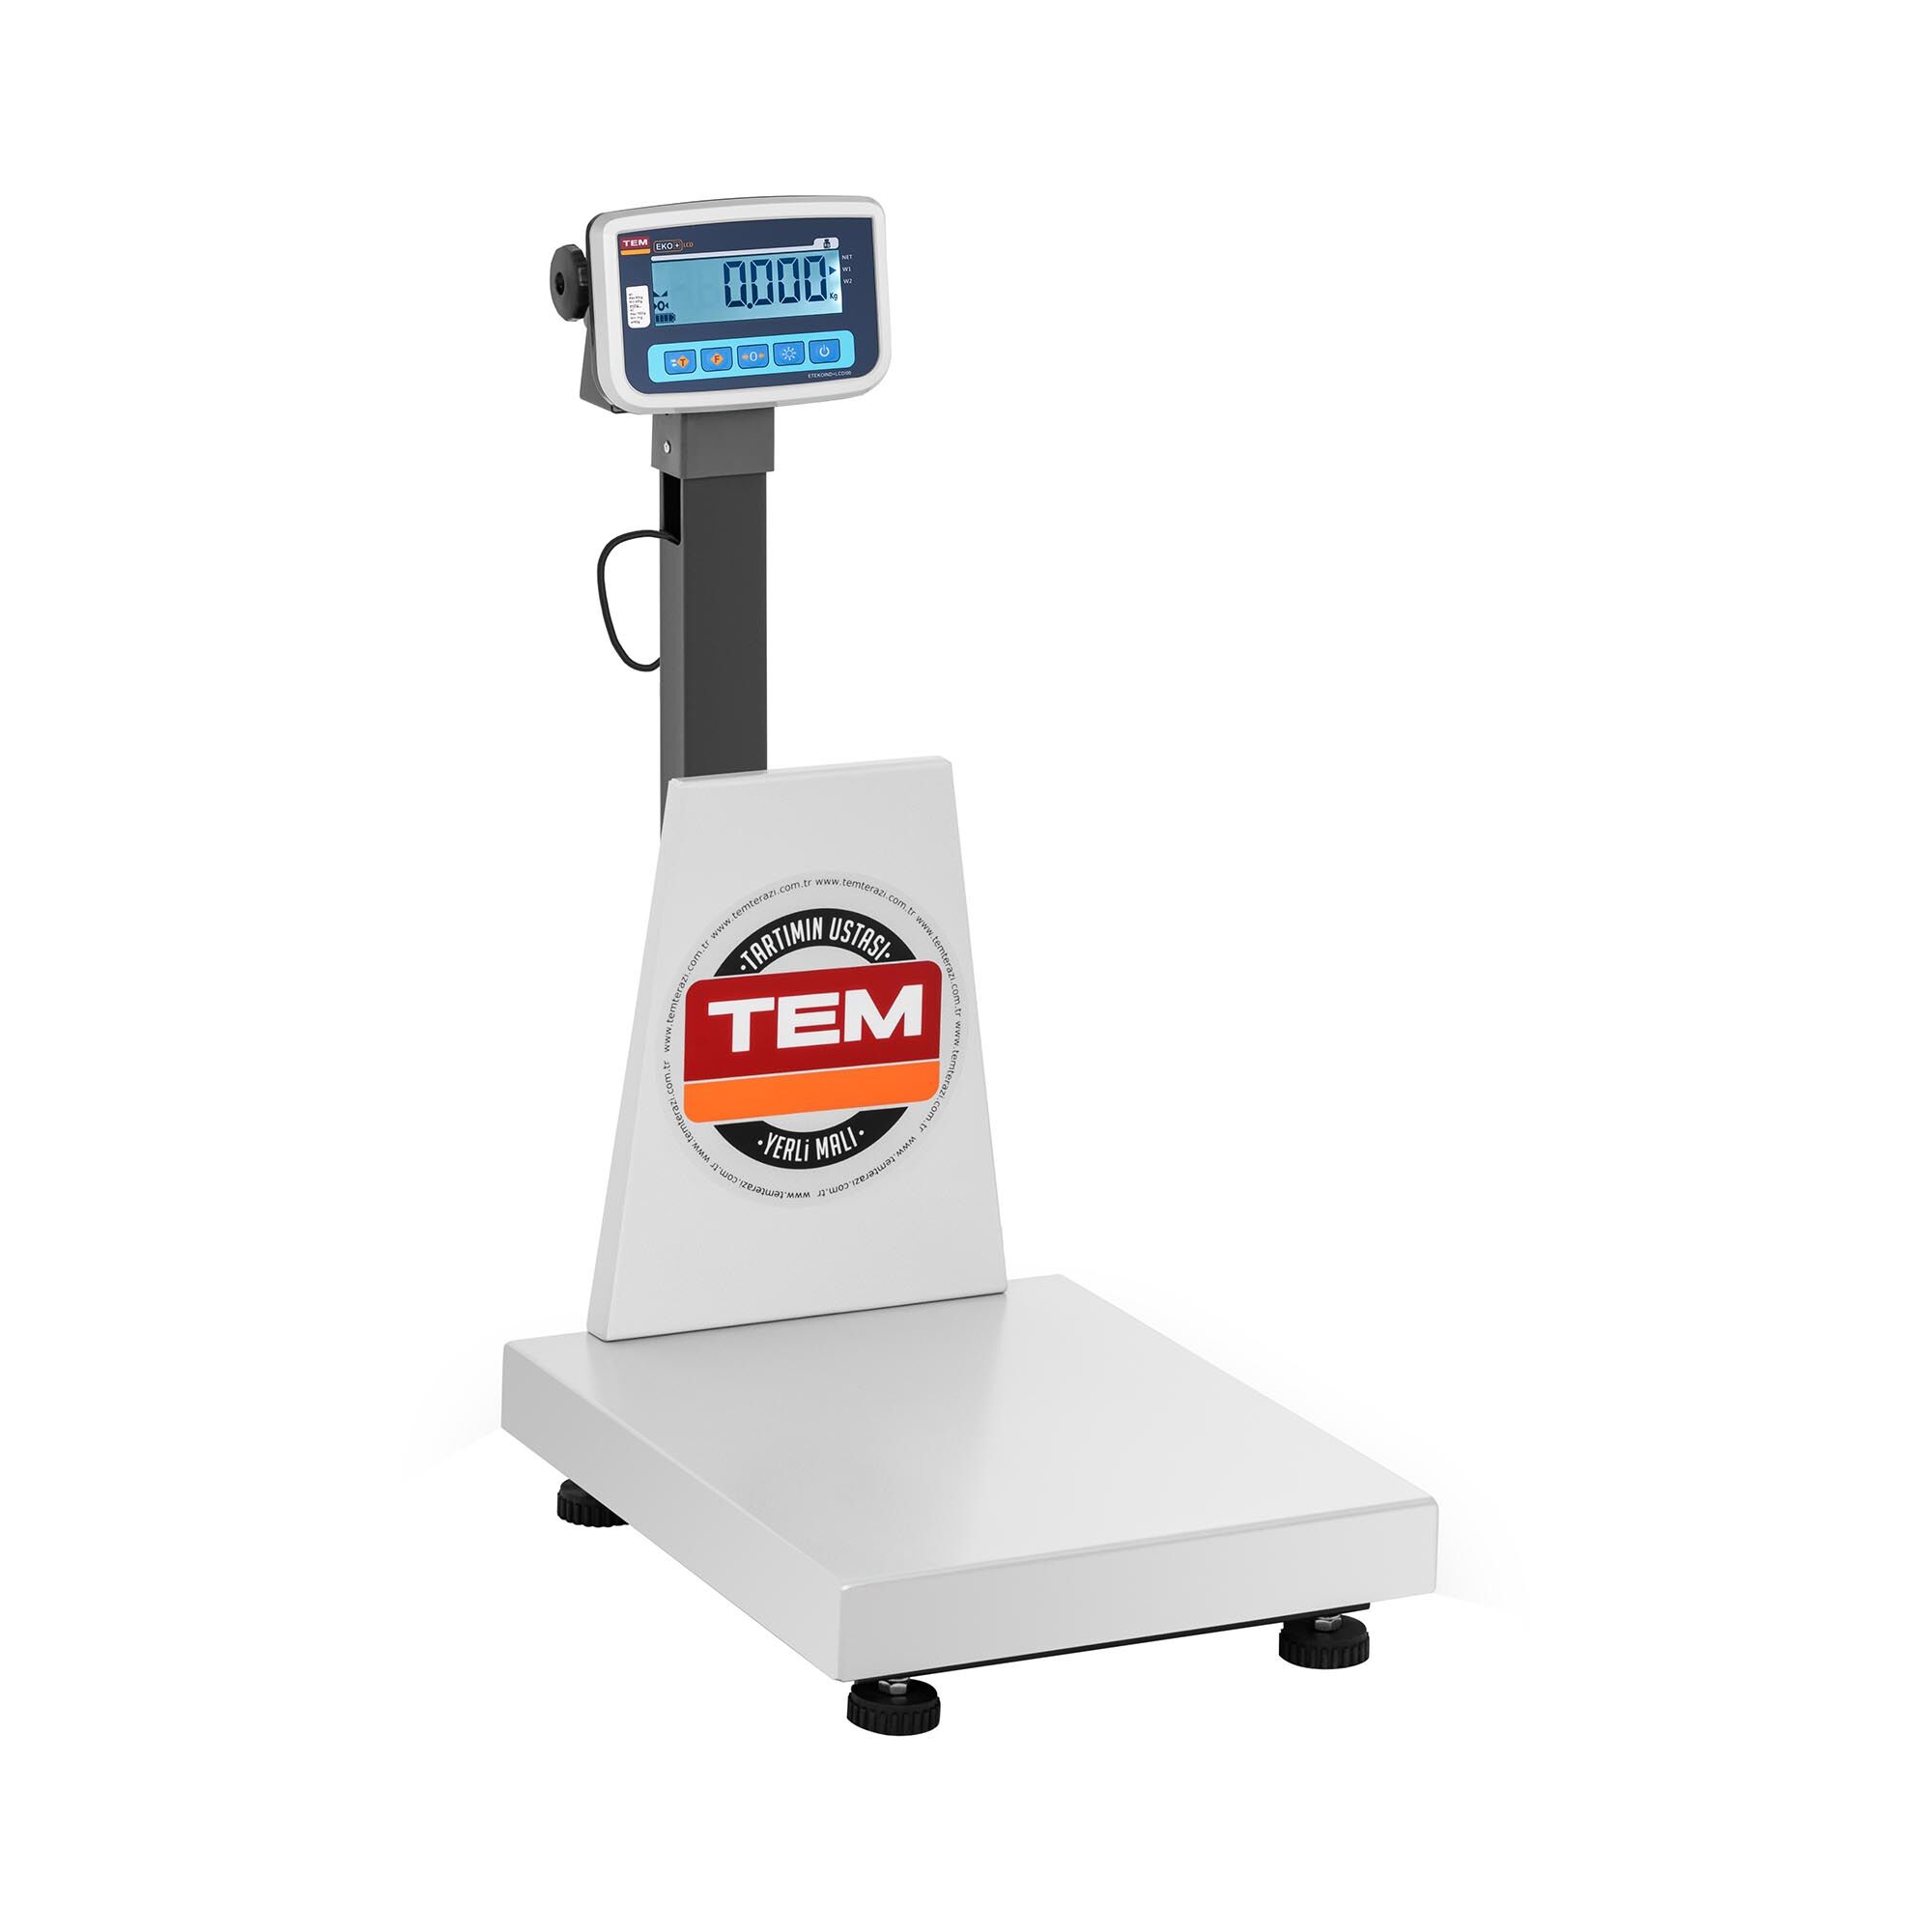 TEM Balance plateforme - Calibrage certifié - 150 kg / 50 g - Antistatique BEK+C040X050150-B1